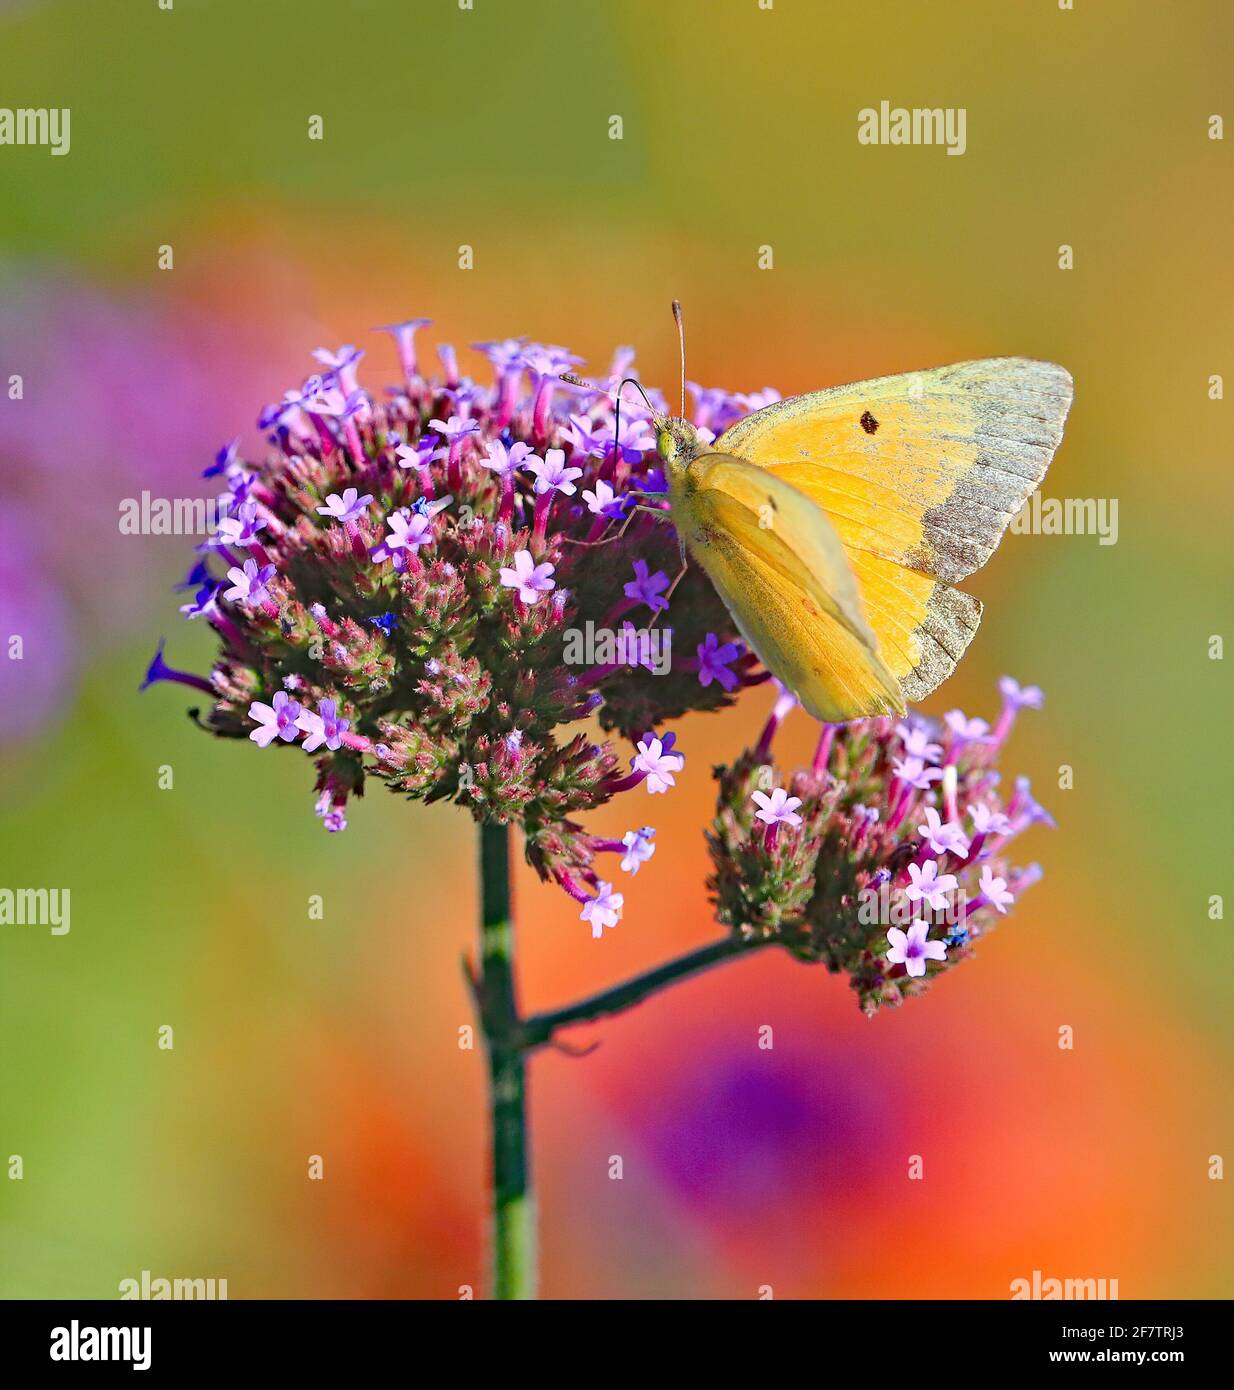 Ein gelber Schmetterling, genannt Orangenschwefel, sammelt Nektar auf einer blühenden Verbena-Pflanze mit einem weichen, bunten Gartenhintergrund. Stockfoto